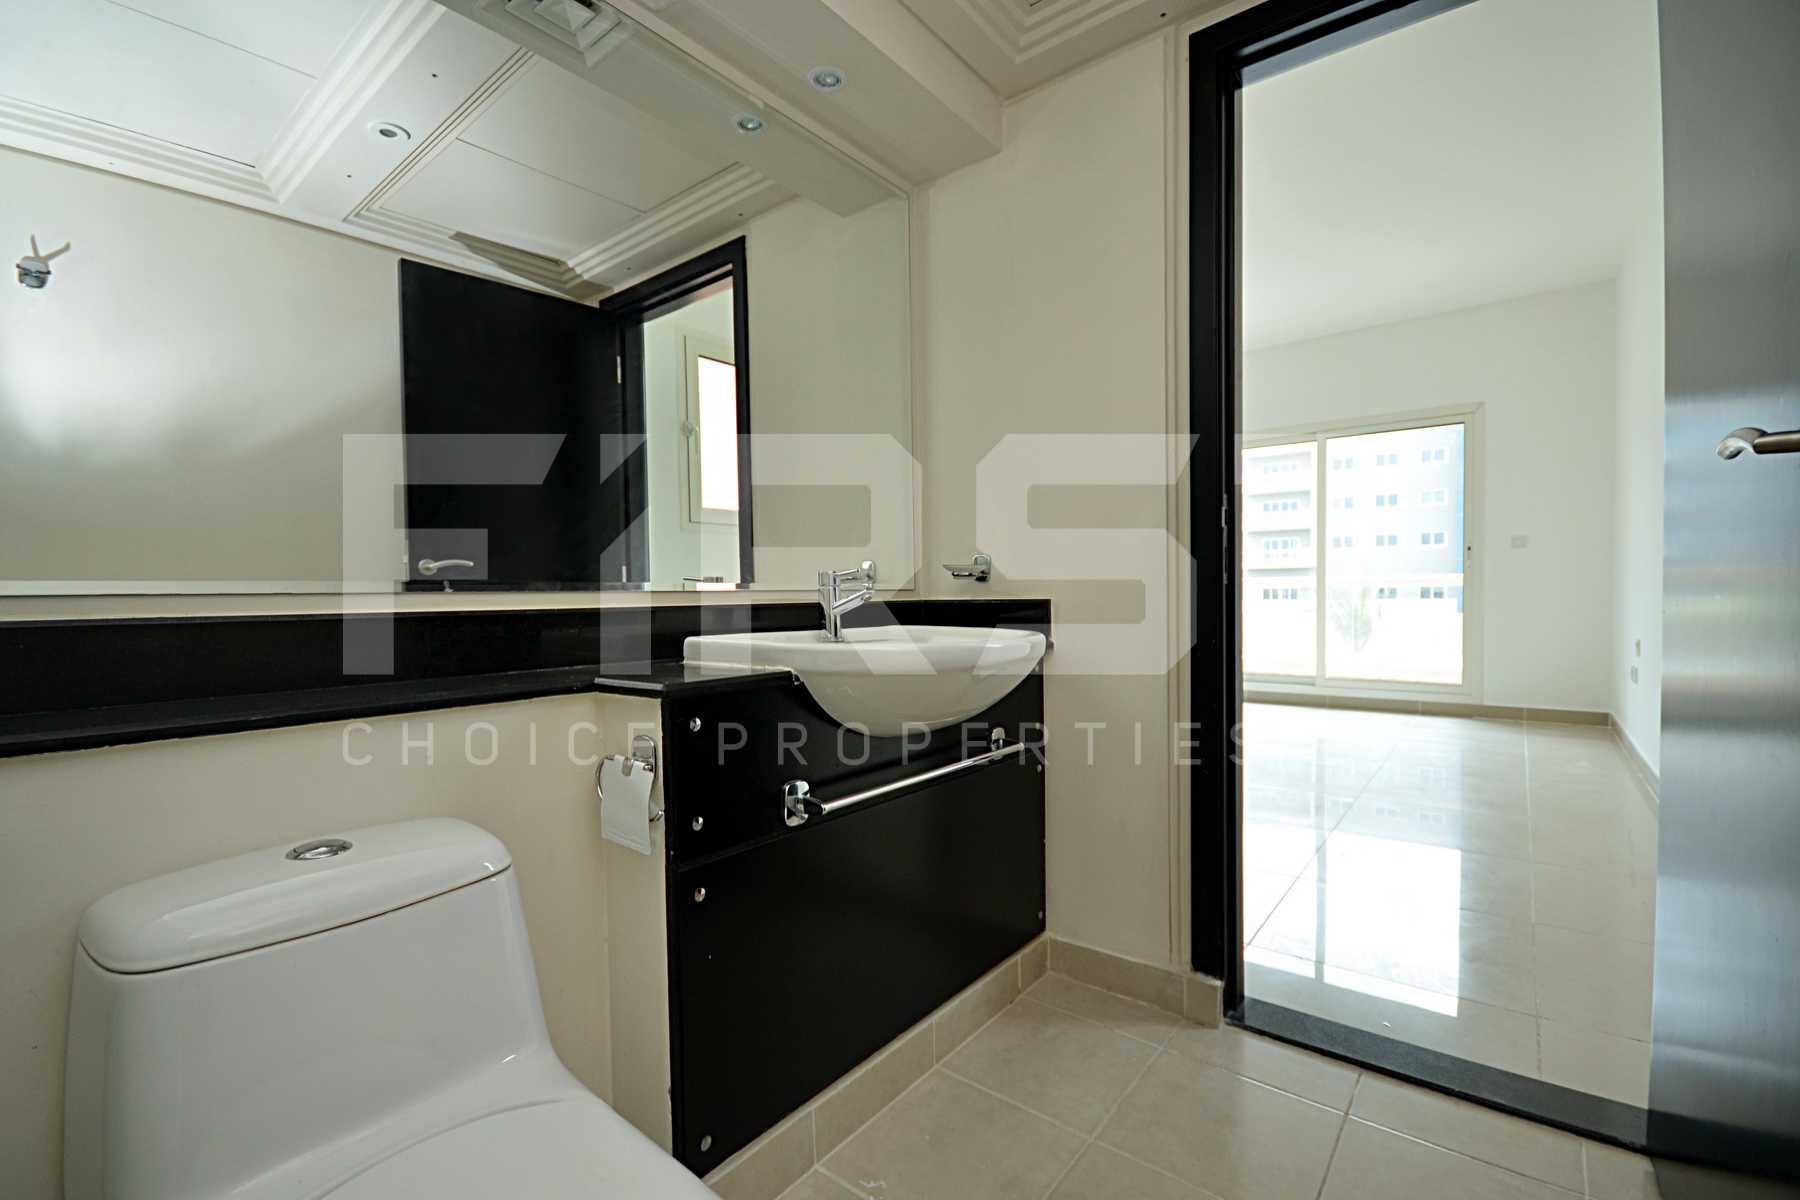 Internal Photo of 4 Bedroom Villa in Al Reef Villas Al Reef Abu Dhabi UAE  2858 sq (21).jpg